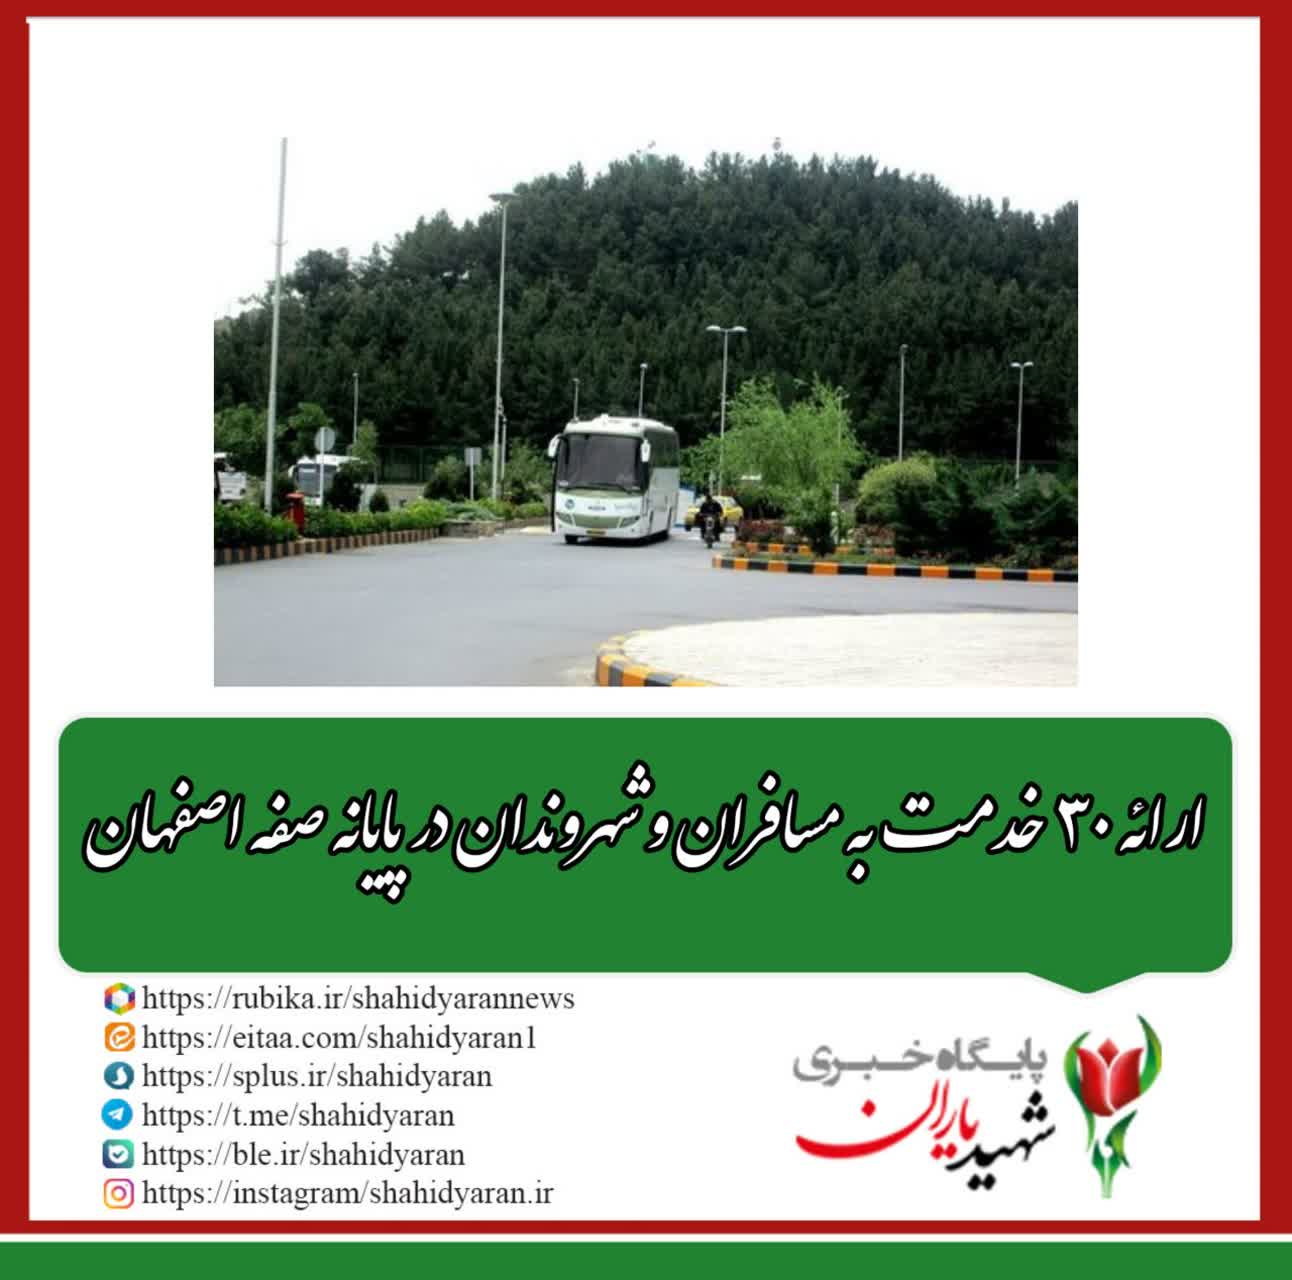 مدیرعامل سازمان پایانه‌های مسافربری شهرداری اصفهان خبر داد:ارائه ۳۰ خدمت به مسافران و شهروندان در پایانه صفه اصفهان